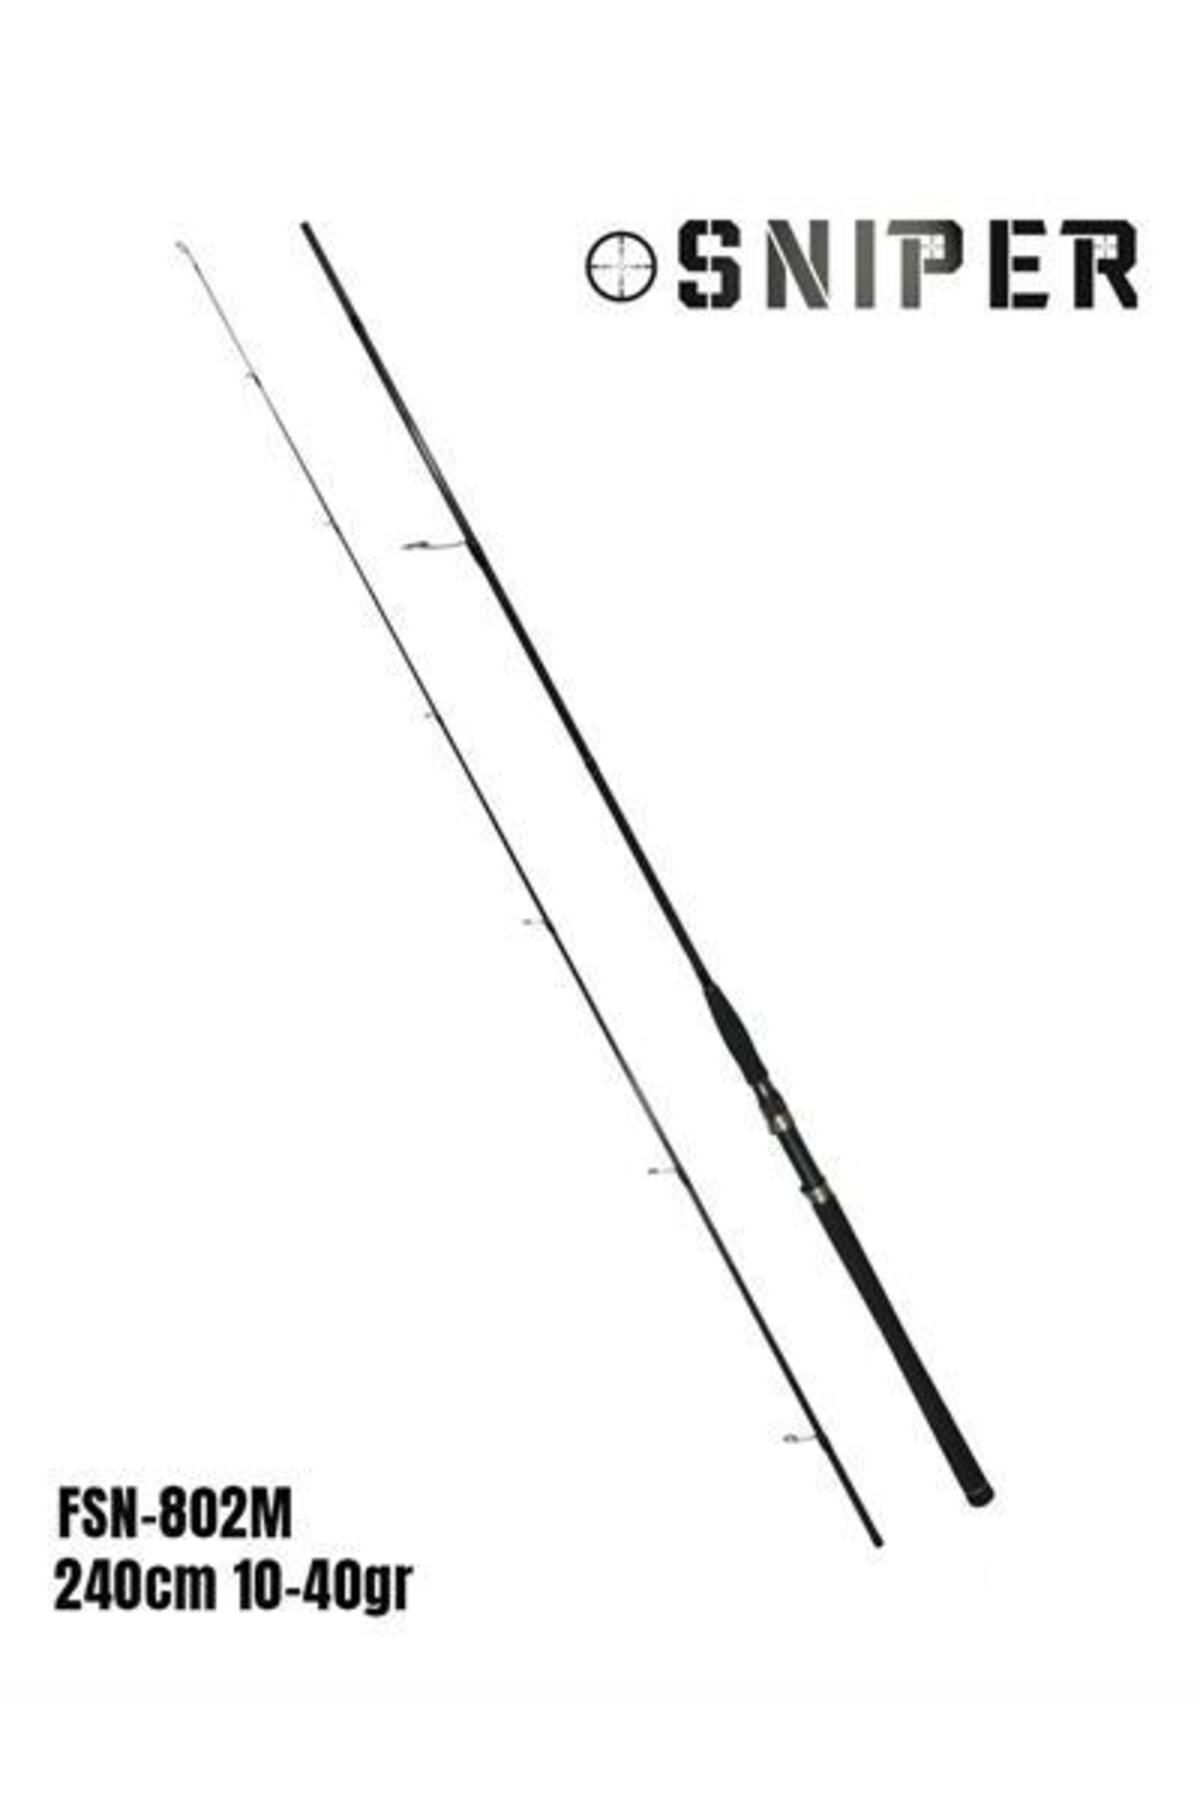 Fujin Sniper 240cm 10-40gr Spin Kamış Fsn-802m